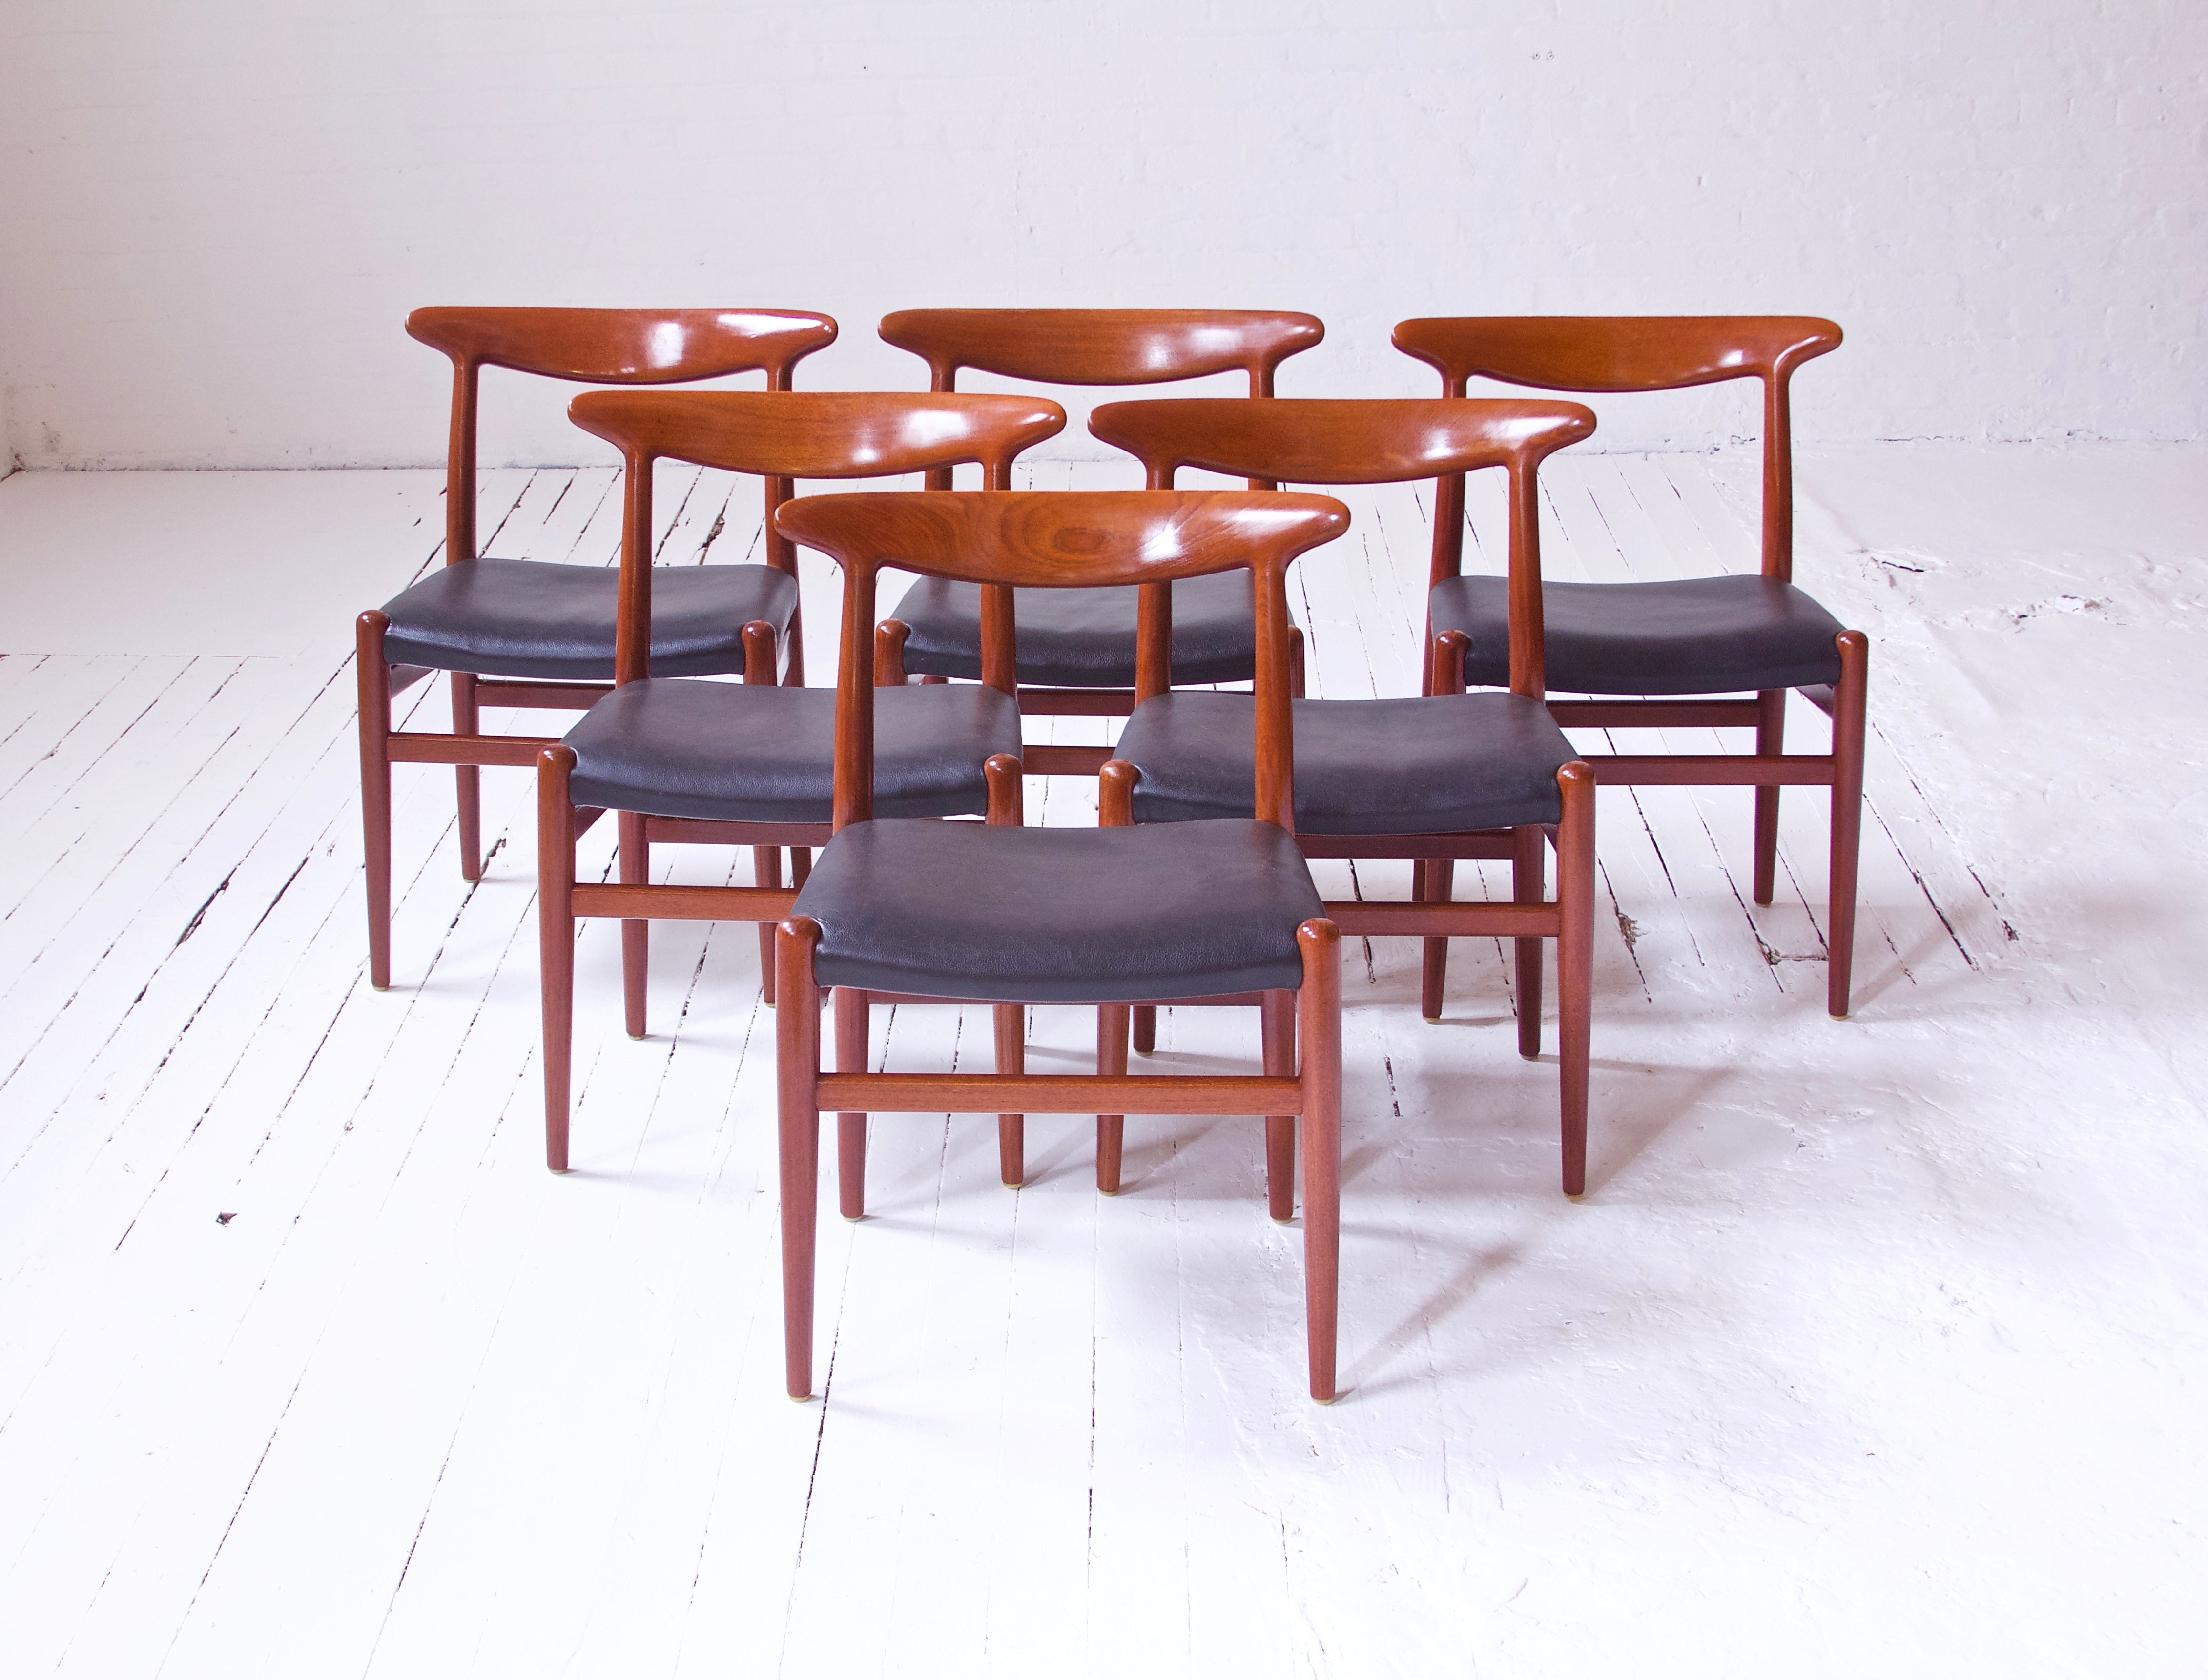 Exemple emblématique de l'œuvre historique de Wegner dans le domaine de la conception de sièges scandinaves, voici un ensemble magnifiquement préservé de six chaises 